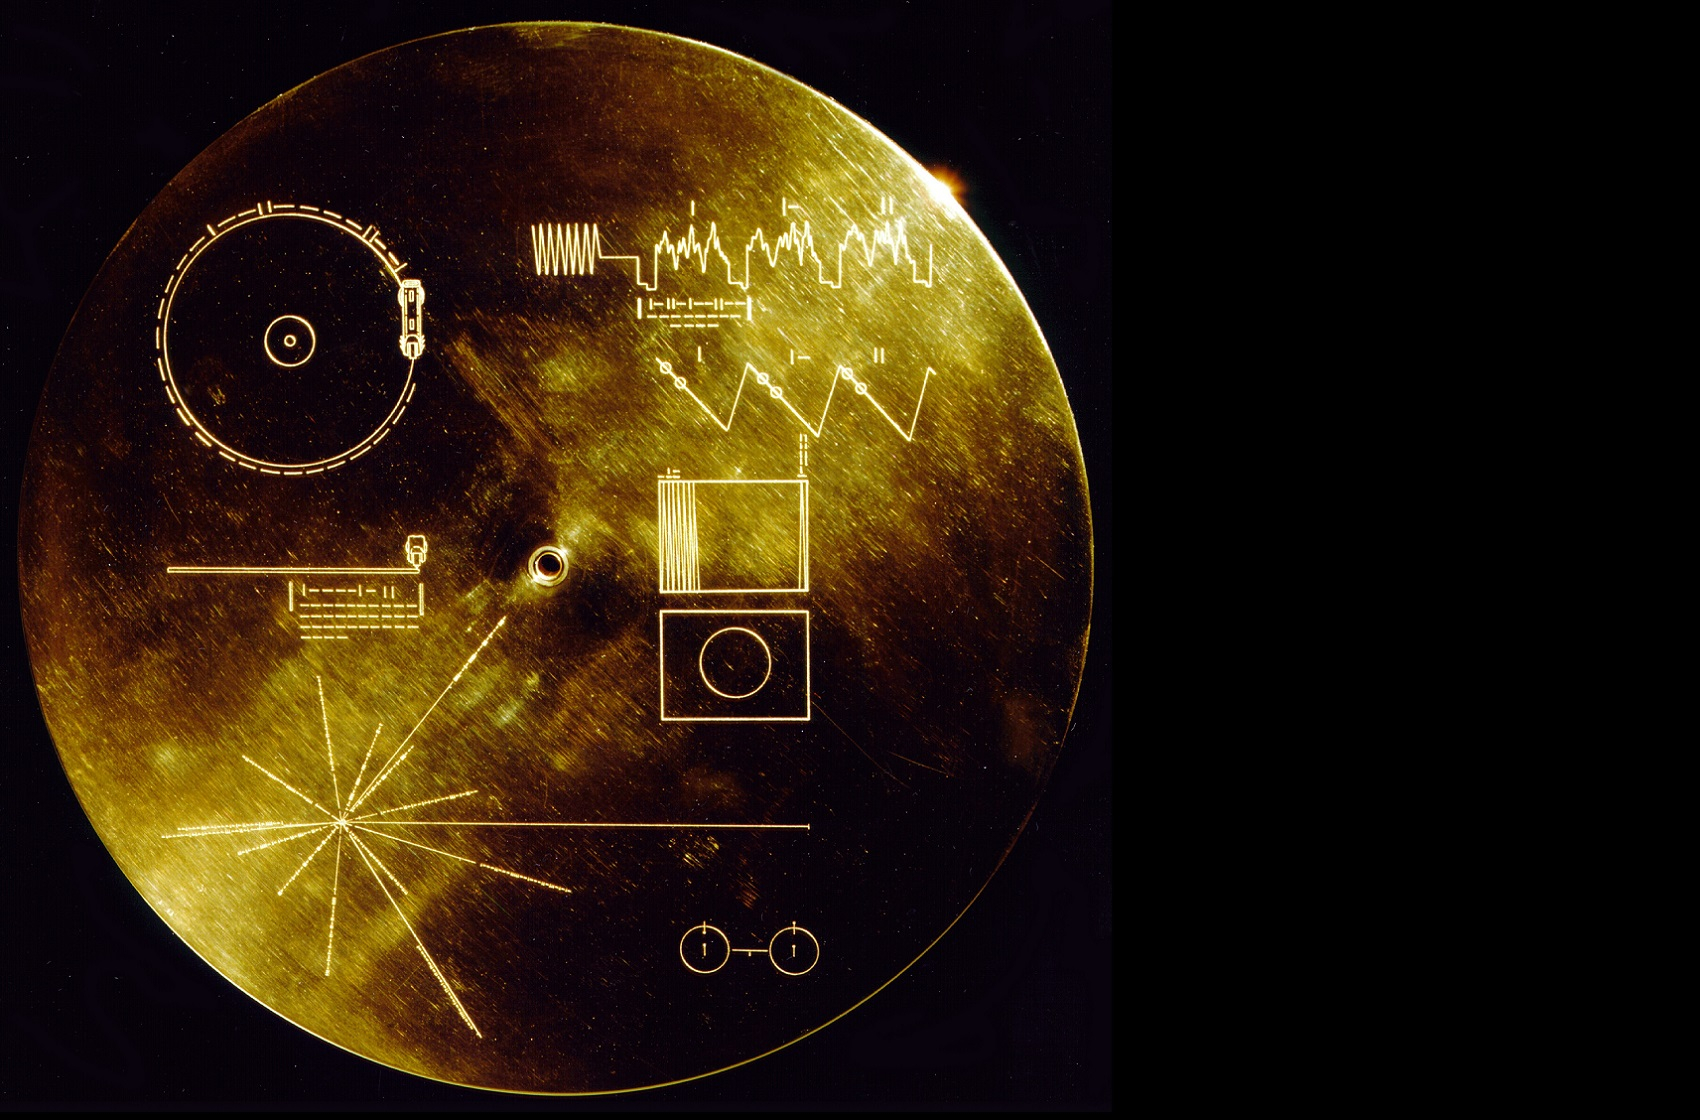 « Bouteille à la mer interstellaire  » ce disque d’or, embarqué dans les deux sondes spatiales Voyager (1977) est destiné à d’éventuels êtres extra-terrestres. Intitulé The Sounds of Earth (« Les sons de la Terre »), il comprend entre autres les bruits du vent, du tonnerre, d’animaux, des cris de nourrisson, des extraits de textes littéraires et de la musique classique et moderne.
La NASA estime que le disque (et la sonde elle-même) survivront plus longtemps que la Terre et le Soleil. © Nasa/JPL